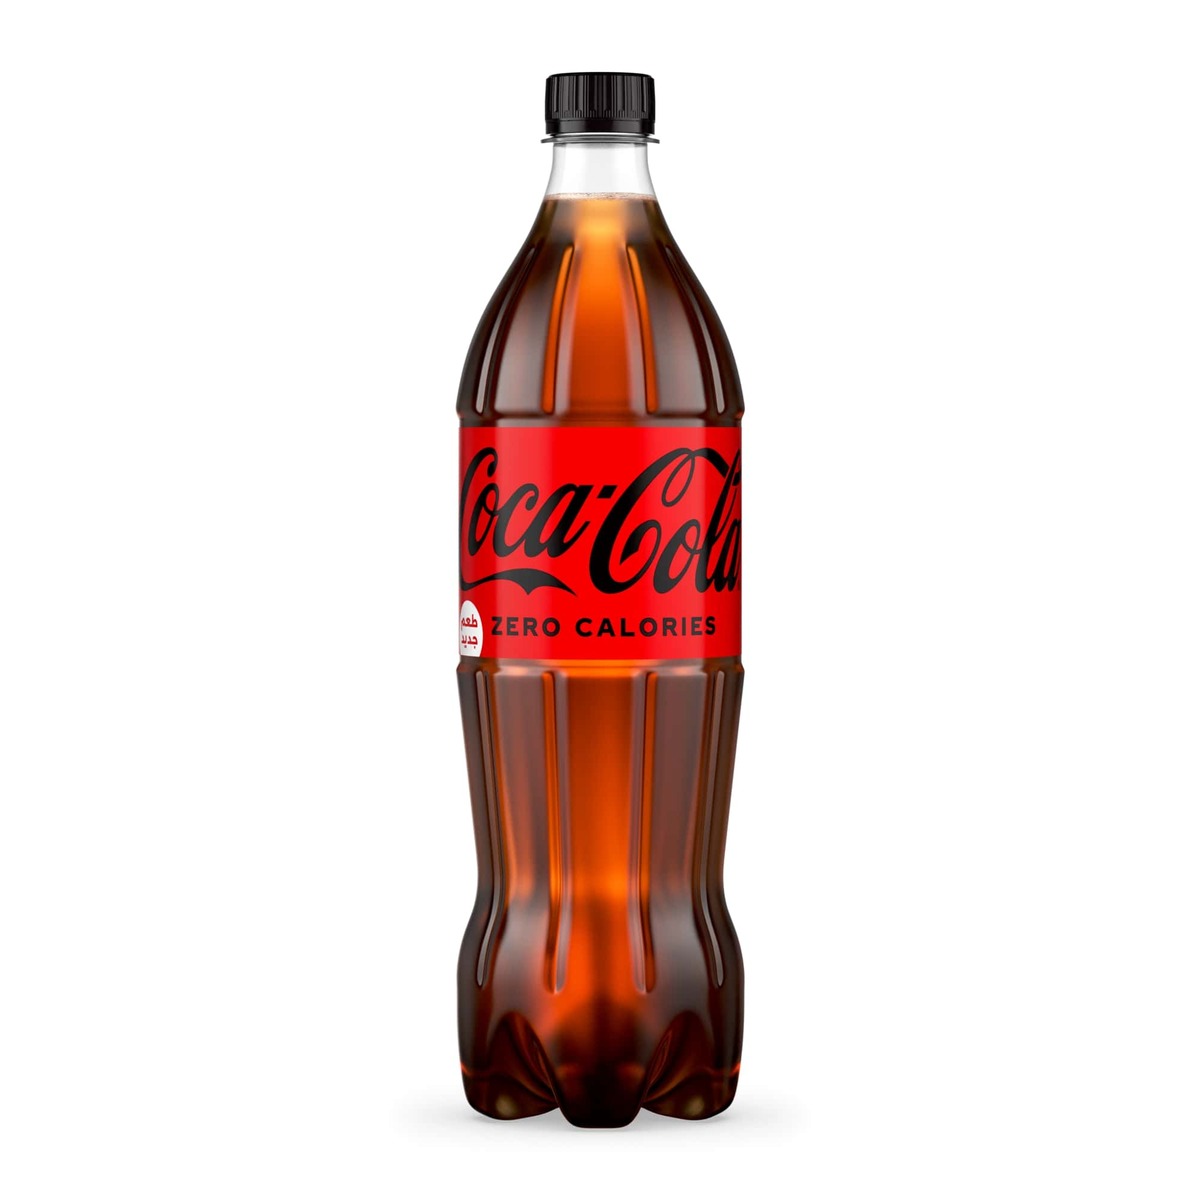 كوكا كولا زيرو زجاجة 1 لتر